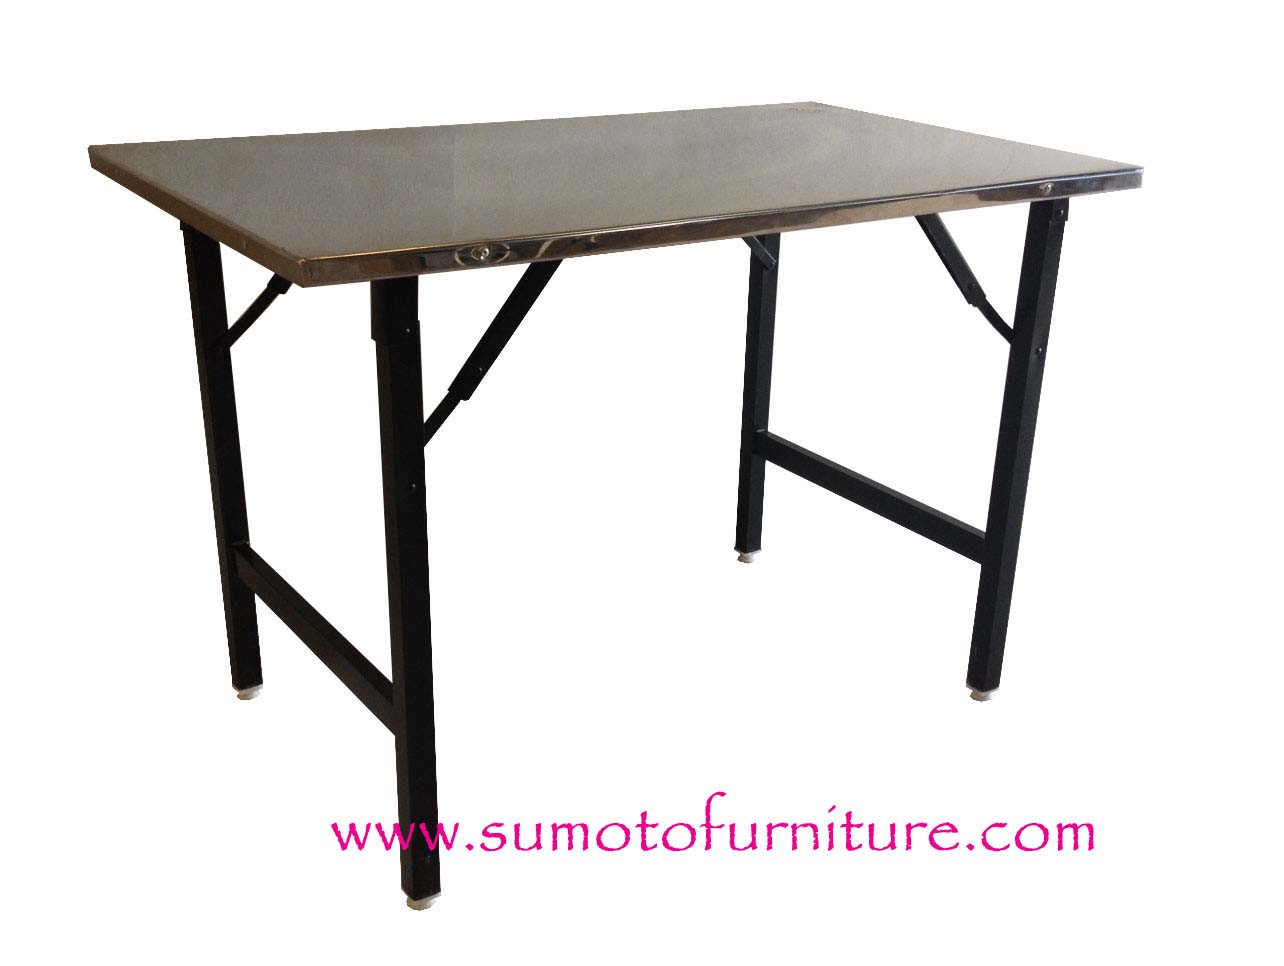 Sumoto furniture